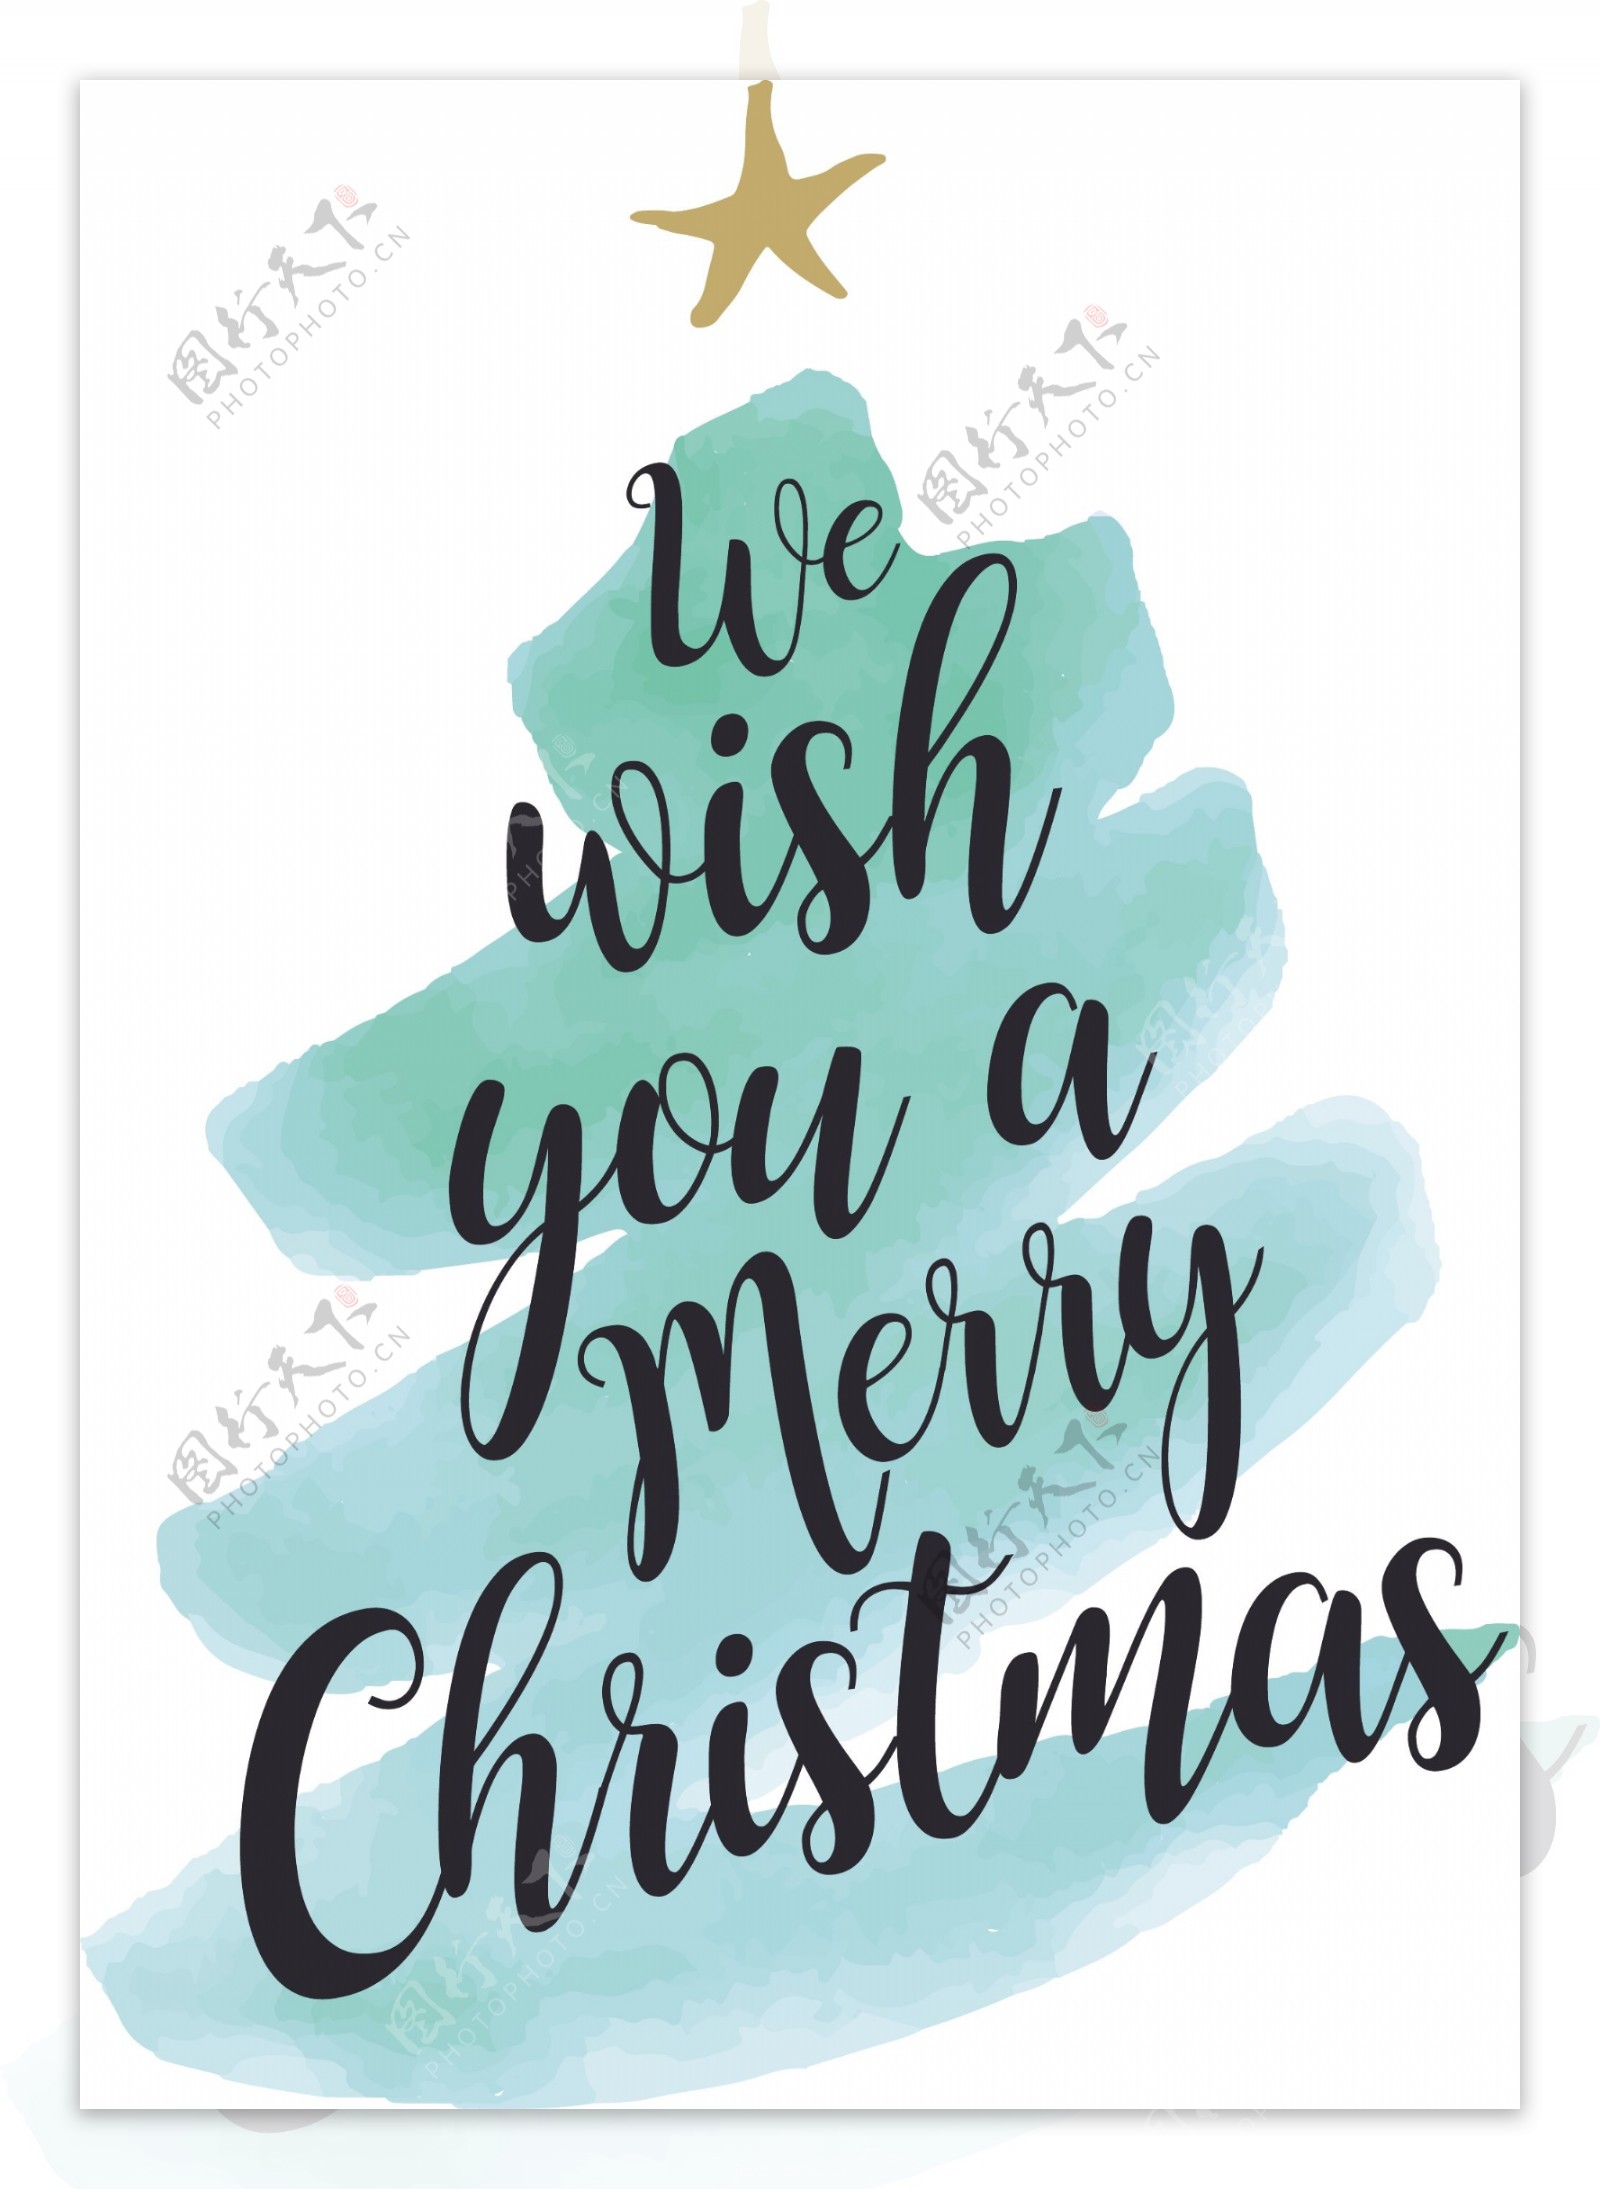 圣诞树蓝色水彩风格新年快乐矢量素材文件